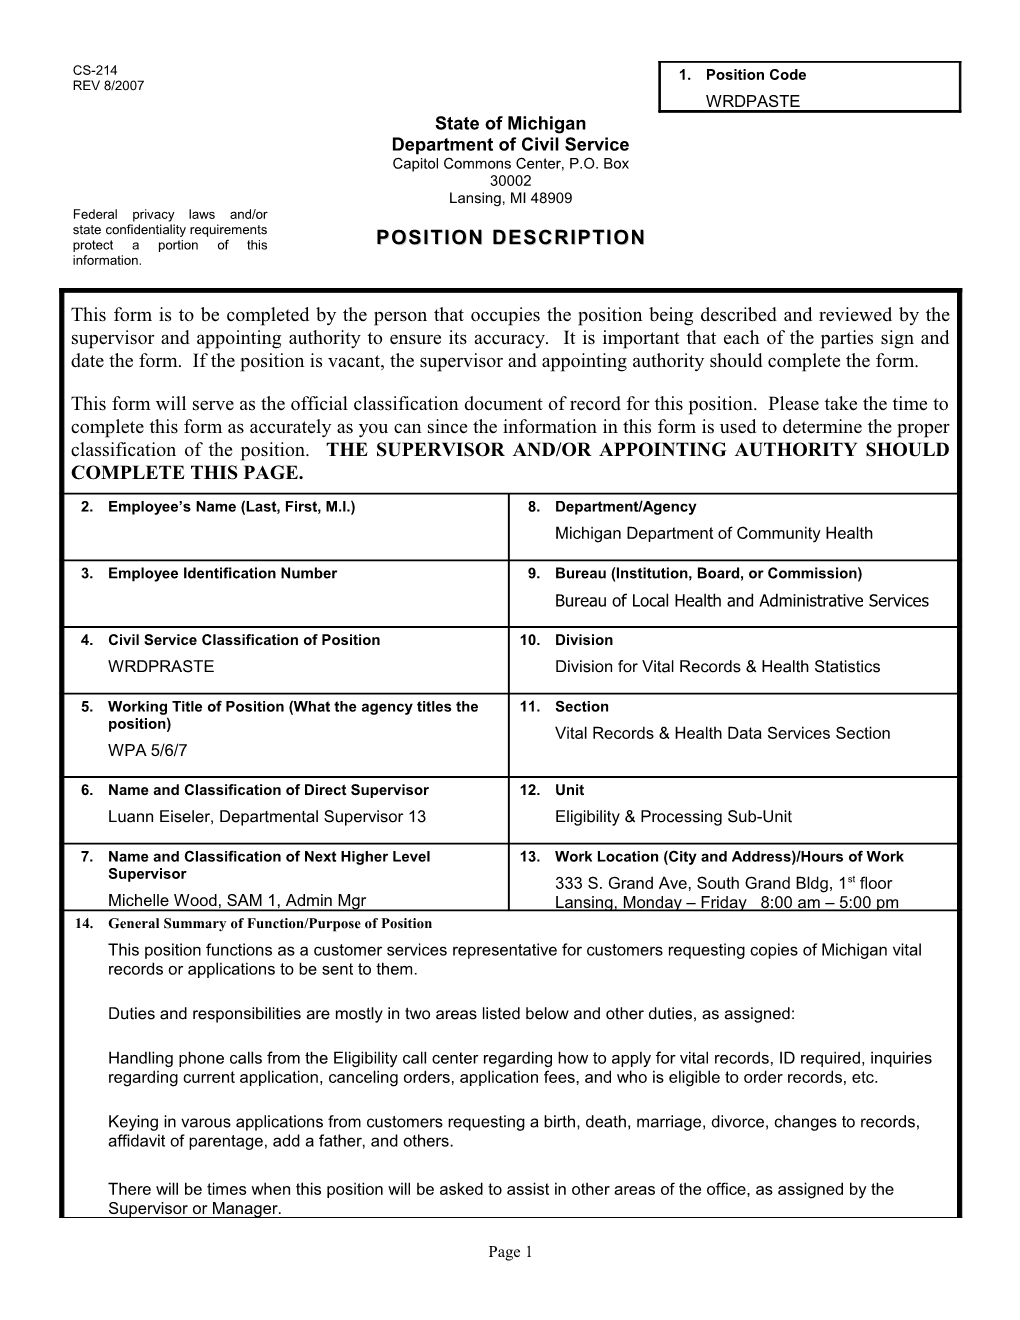 CS-214 Position Description Form s16